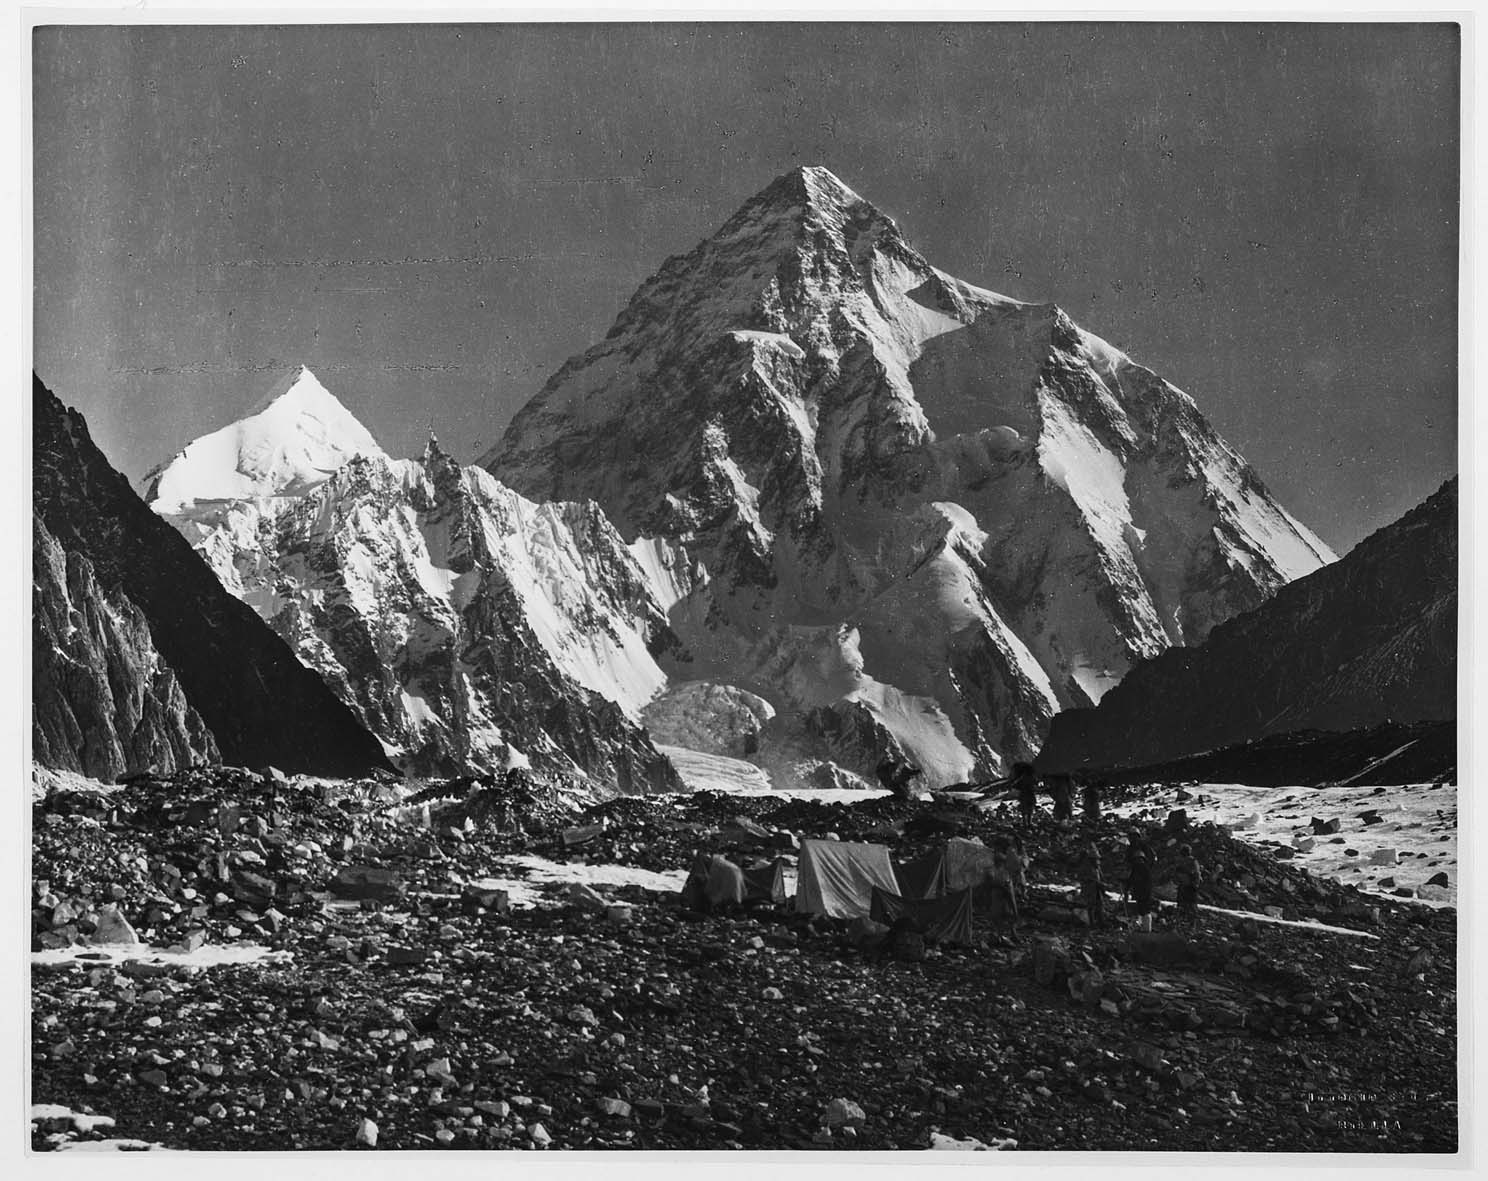 Cattedrali di ghiaccio. Vittorio Sella Himalaya 1909